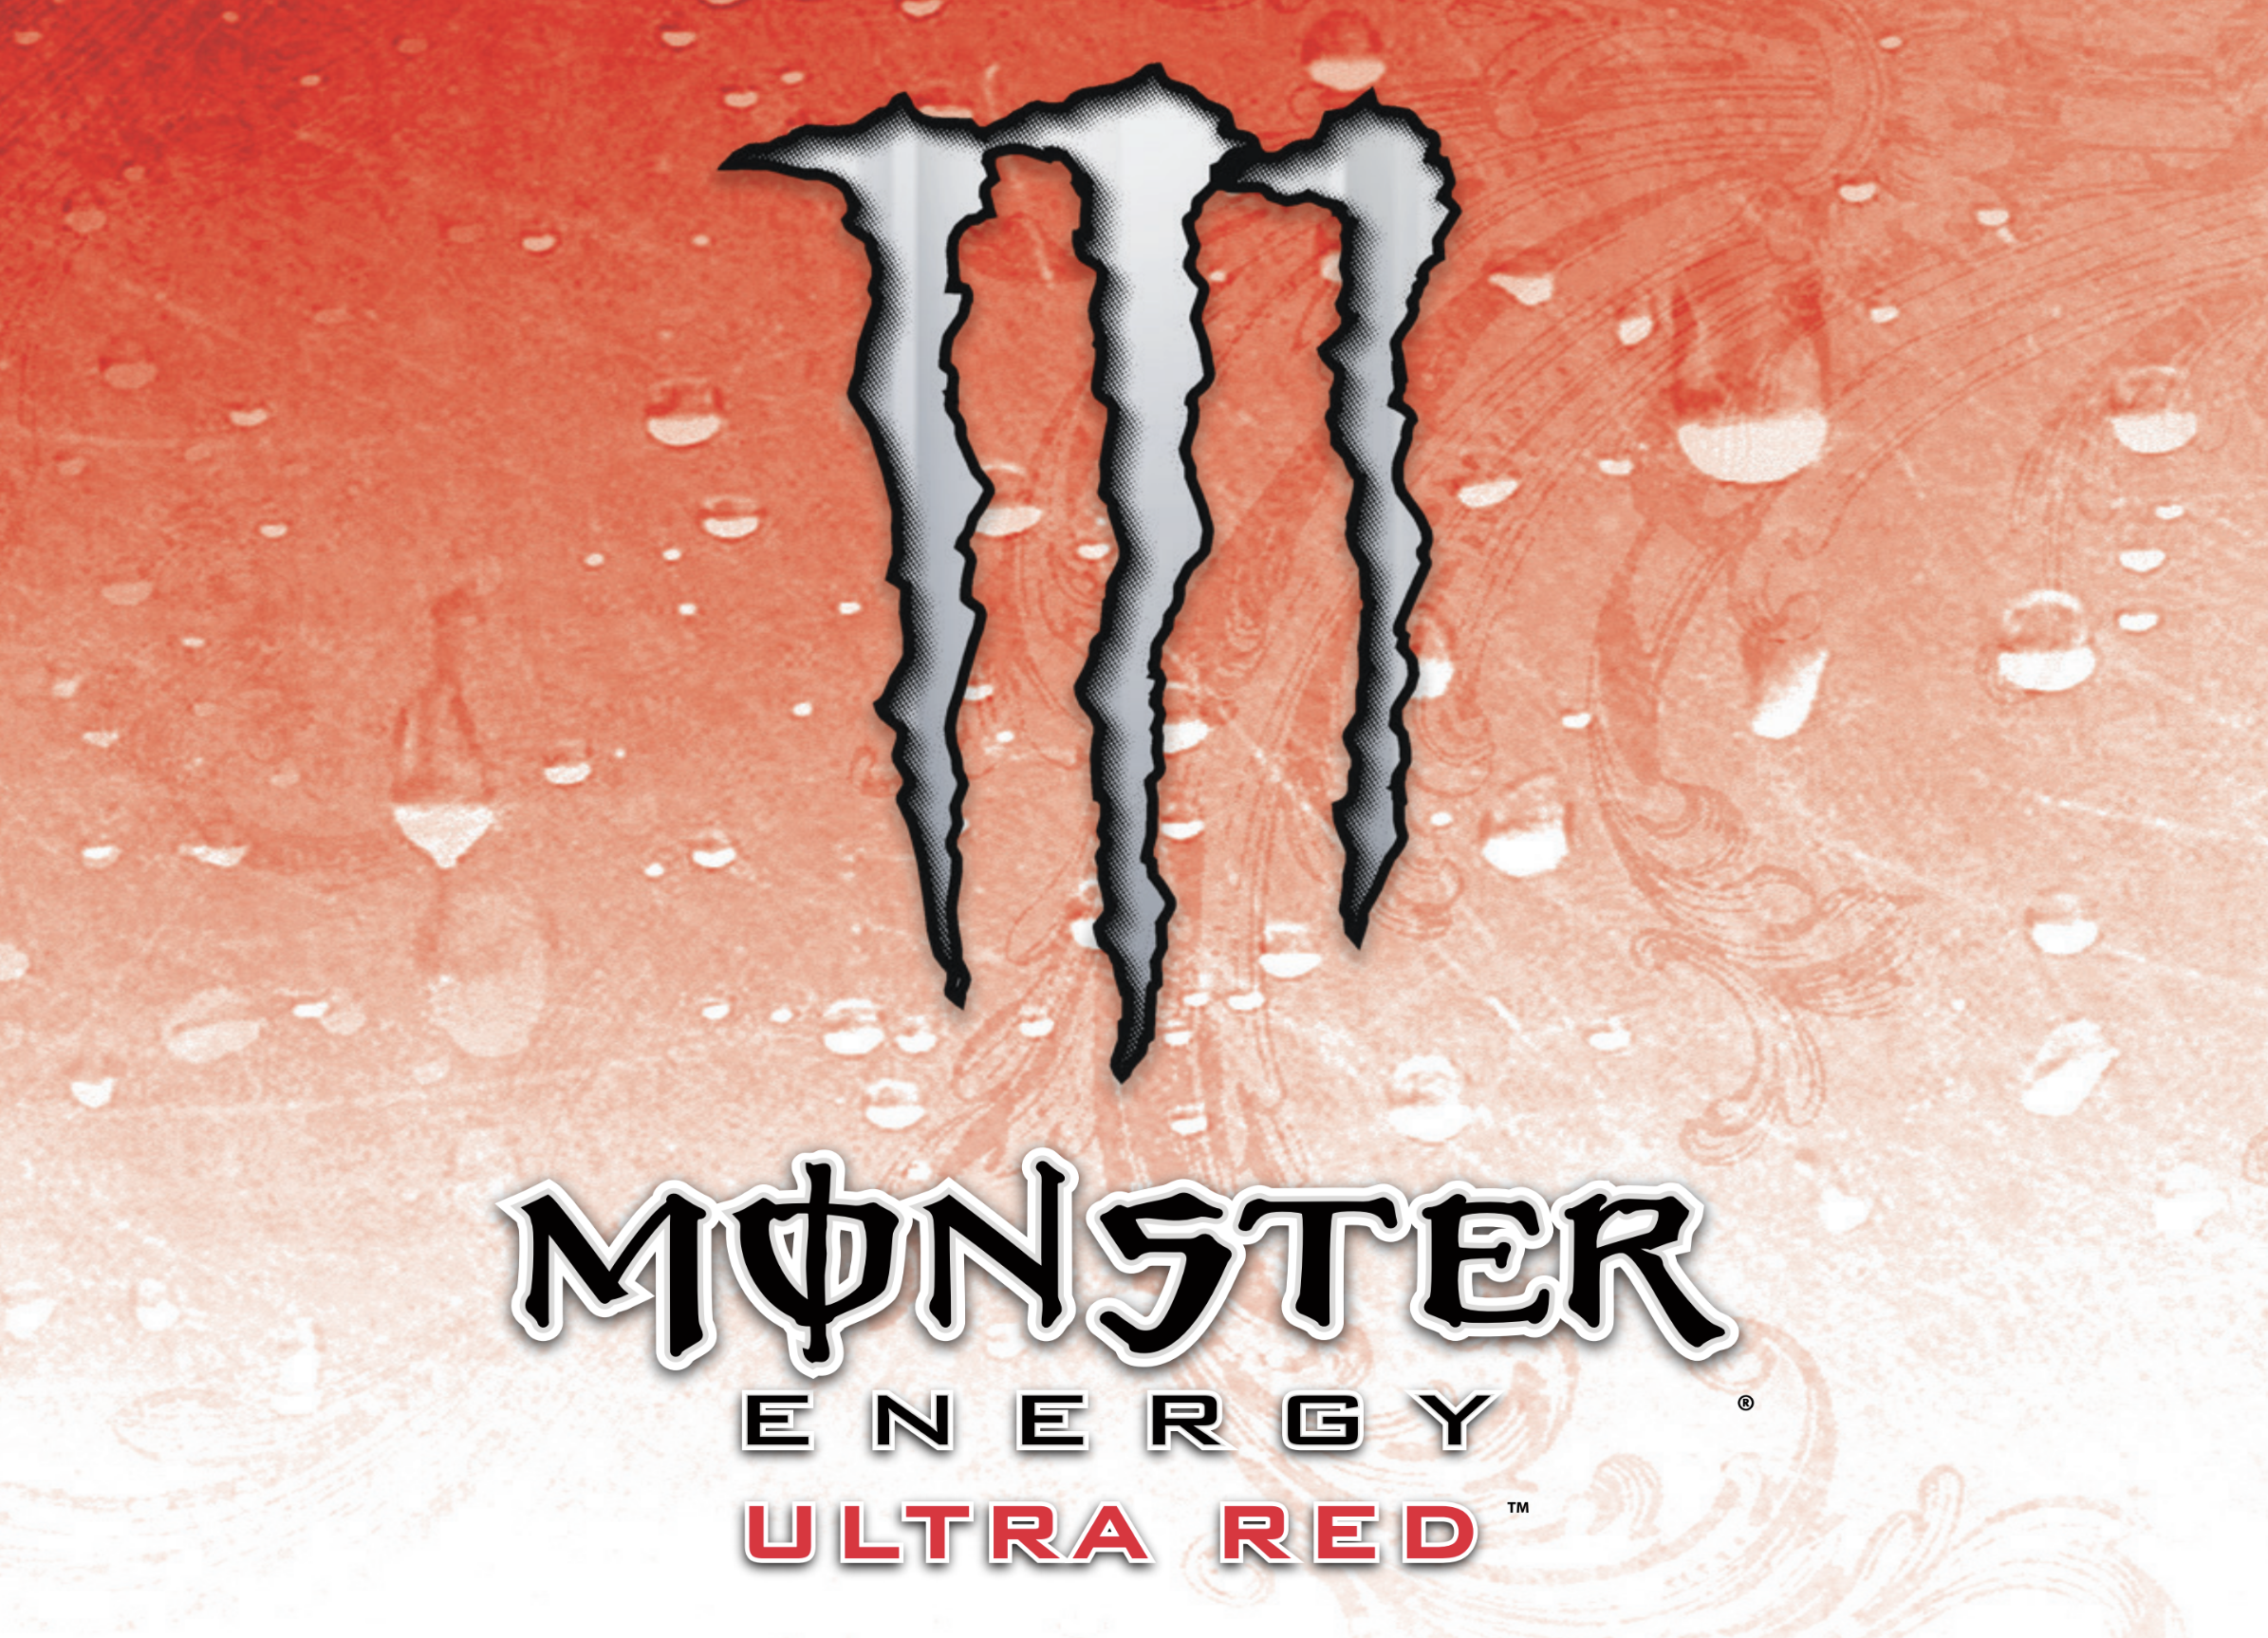 red monster energy logos